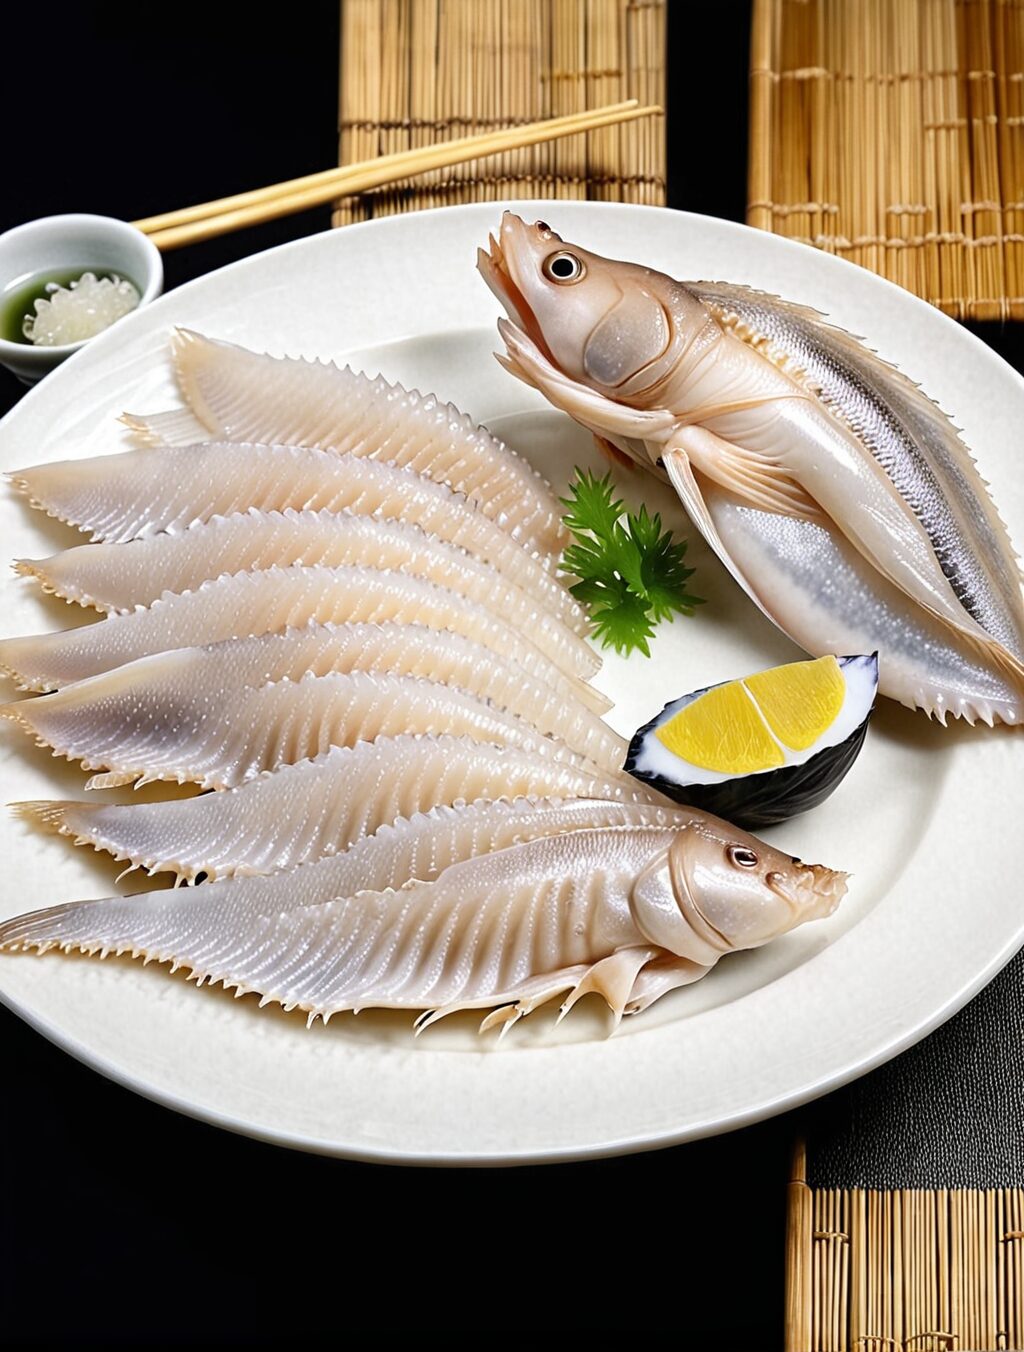 poisonous sea delicacy eaten in japan